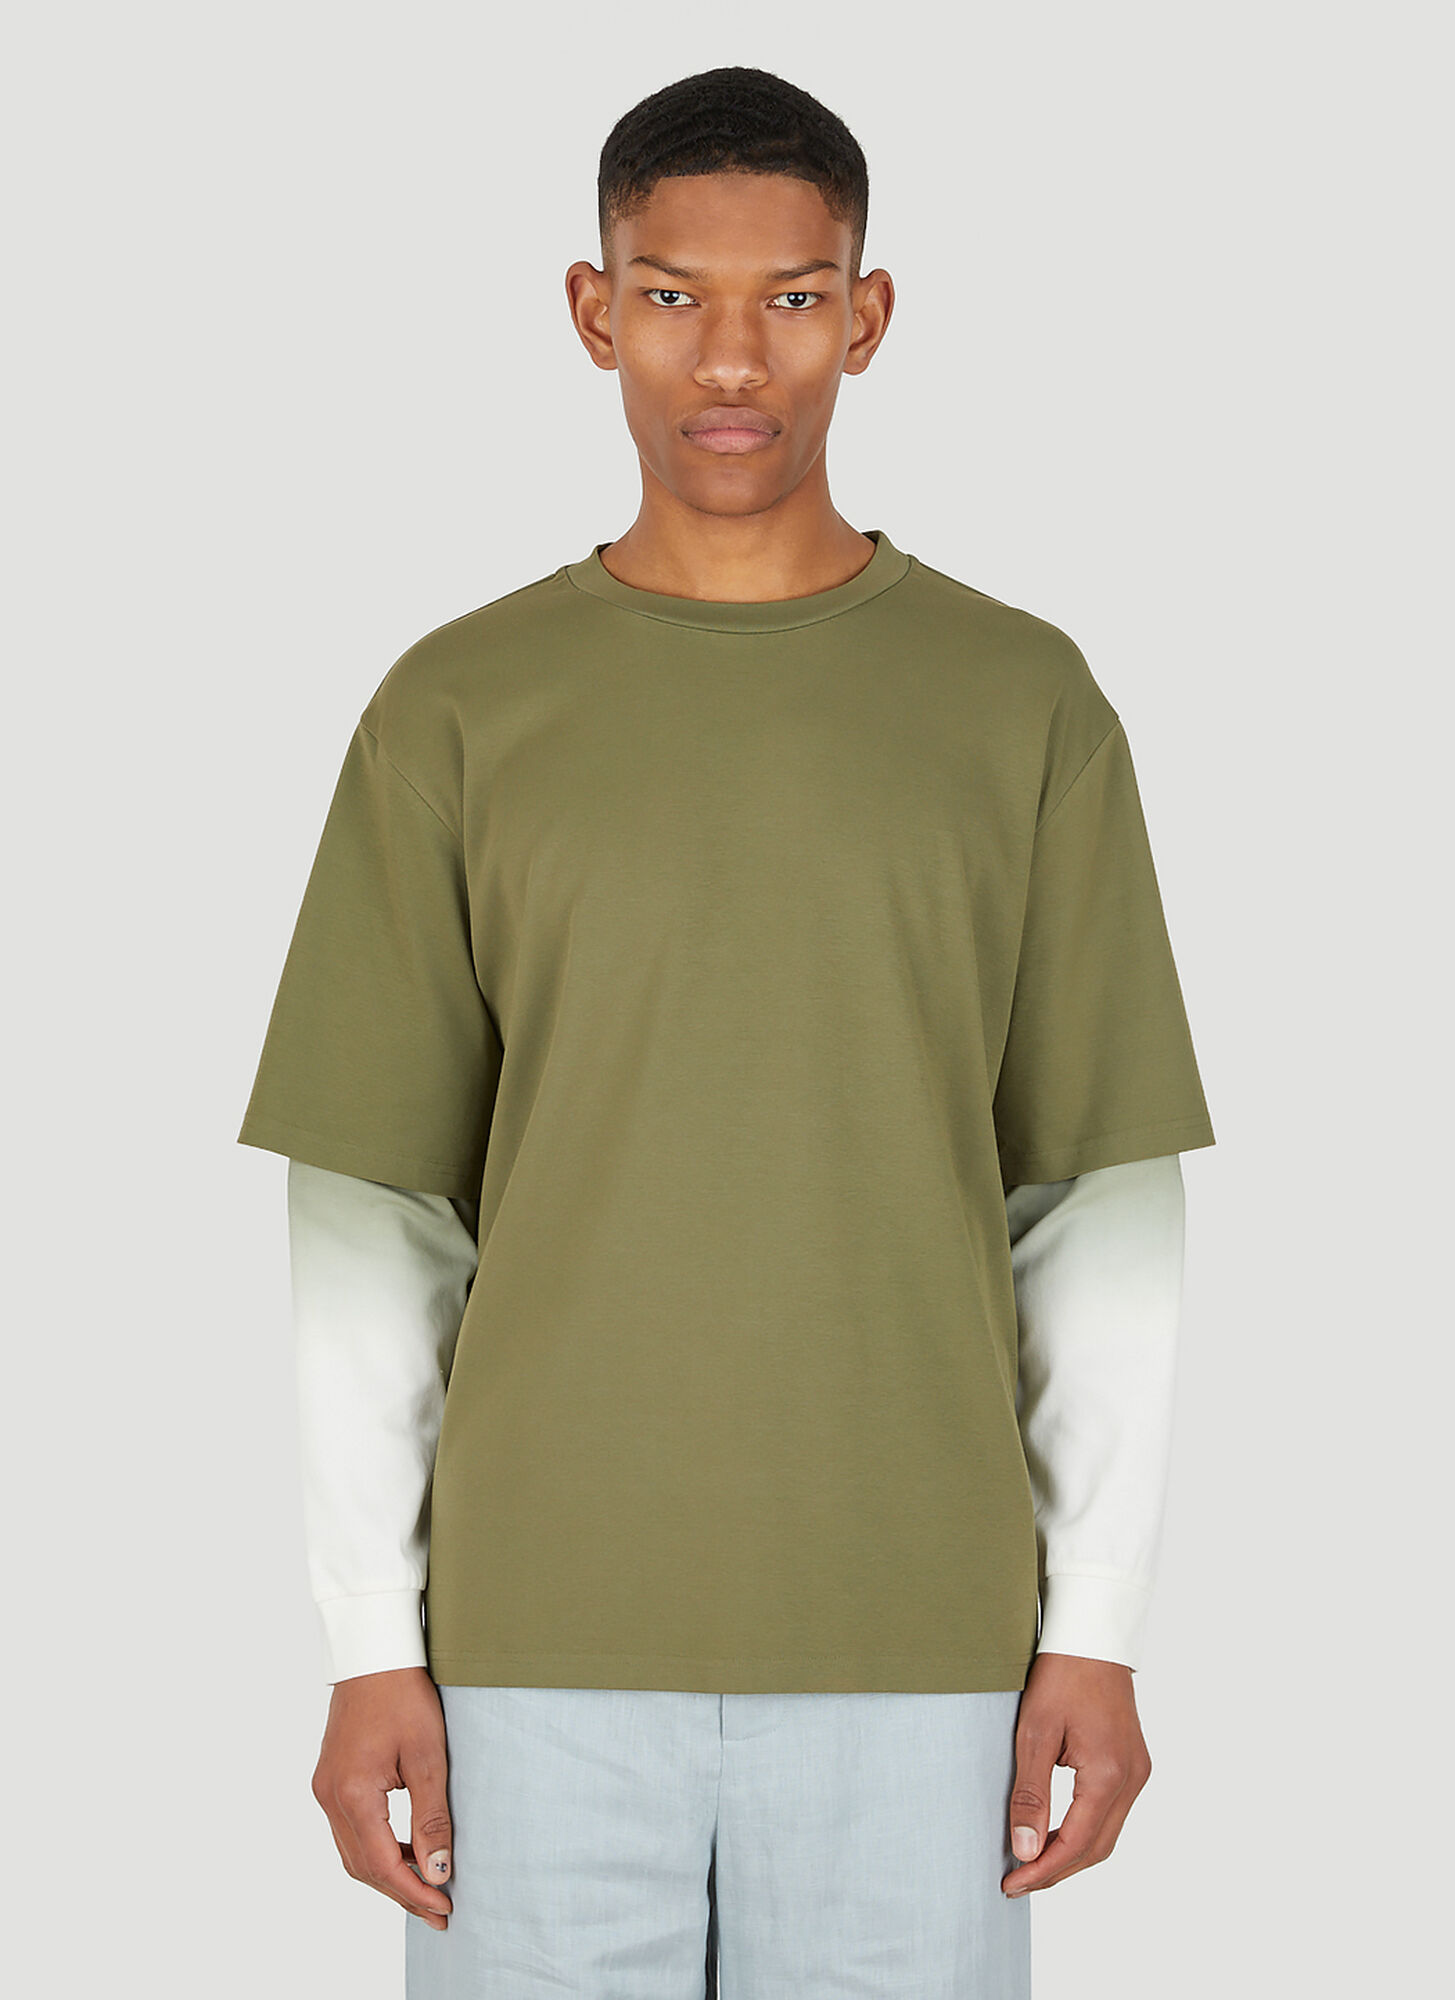 Wynn Hamlyn Men's Double T-shirt In Green